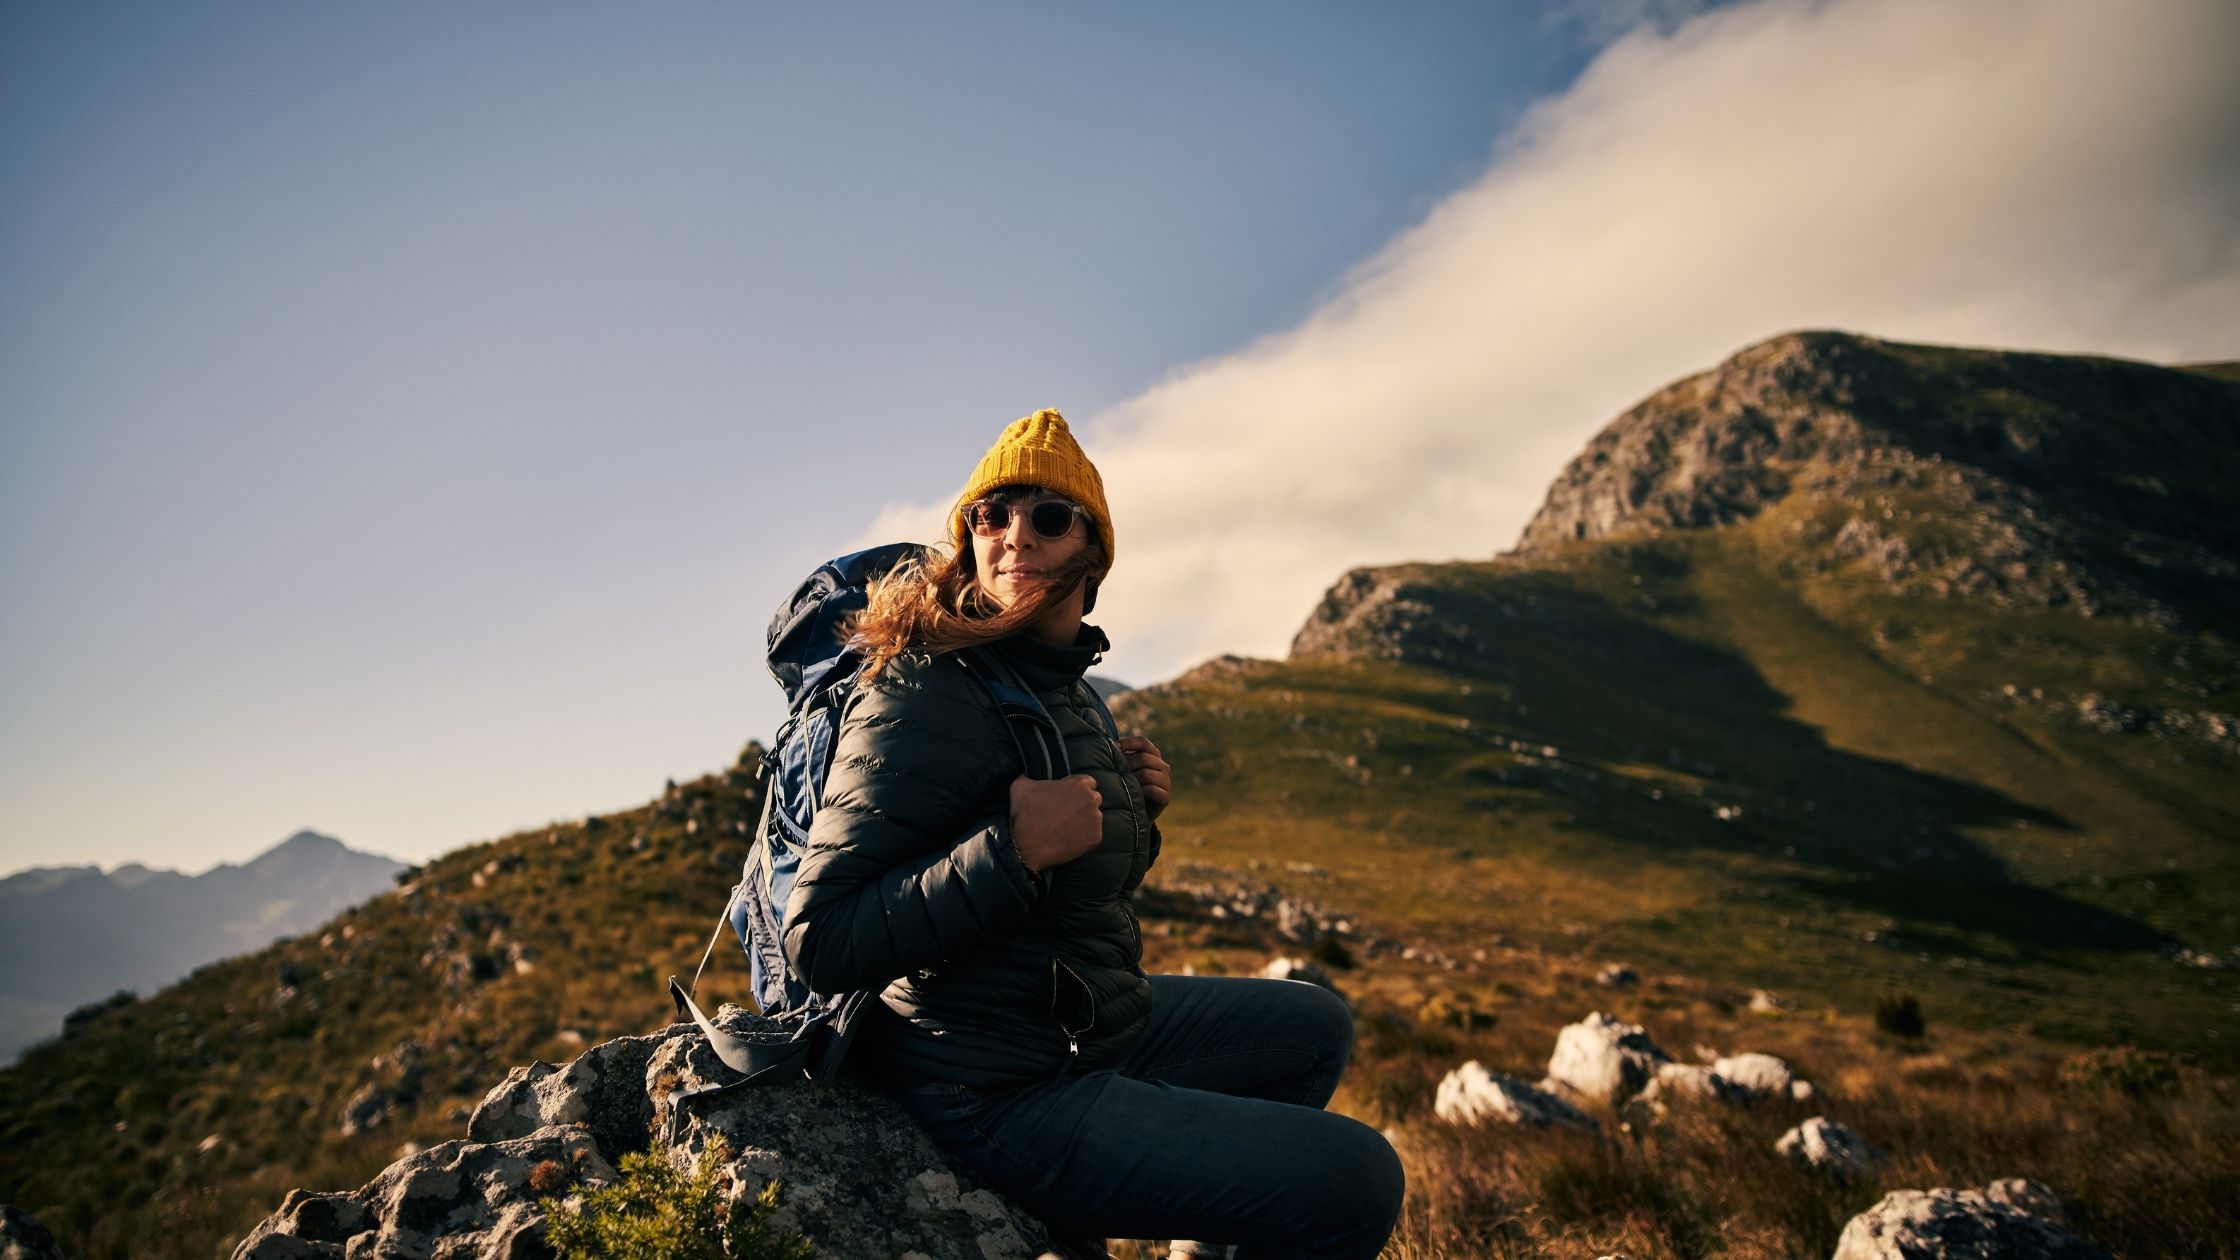 Mujer viajera sentada en una roca y montañas como paisaje de fondo